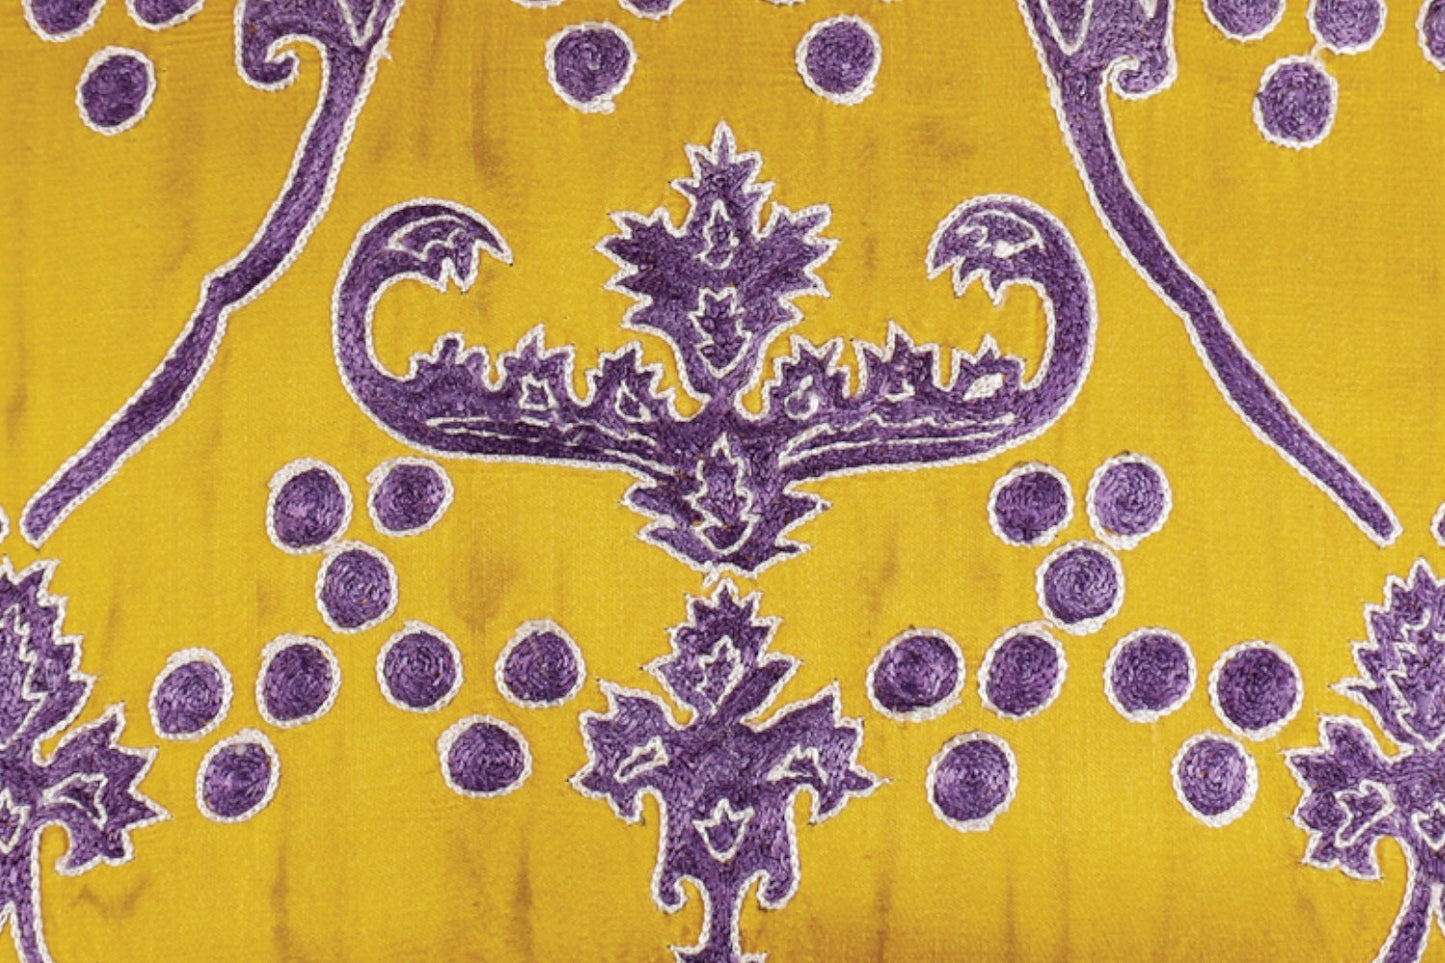 Silk Embroidered Suzani Yellow Chintamani Cushion